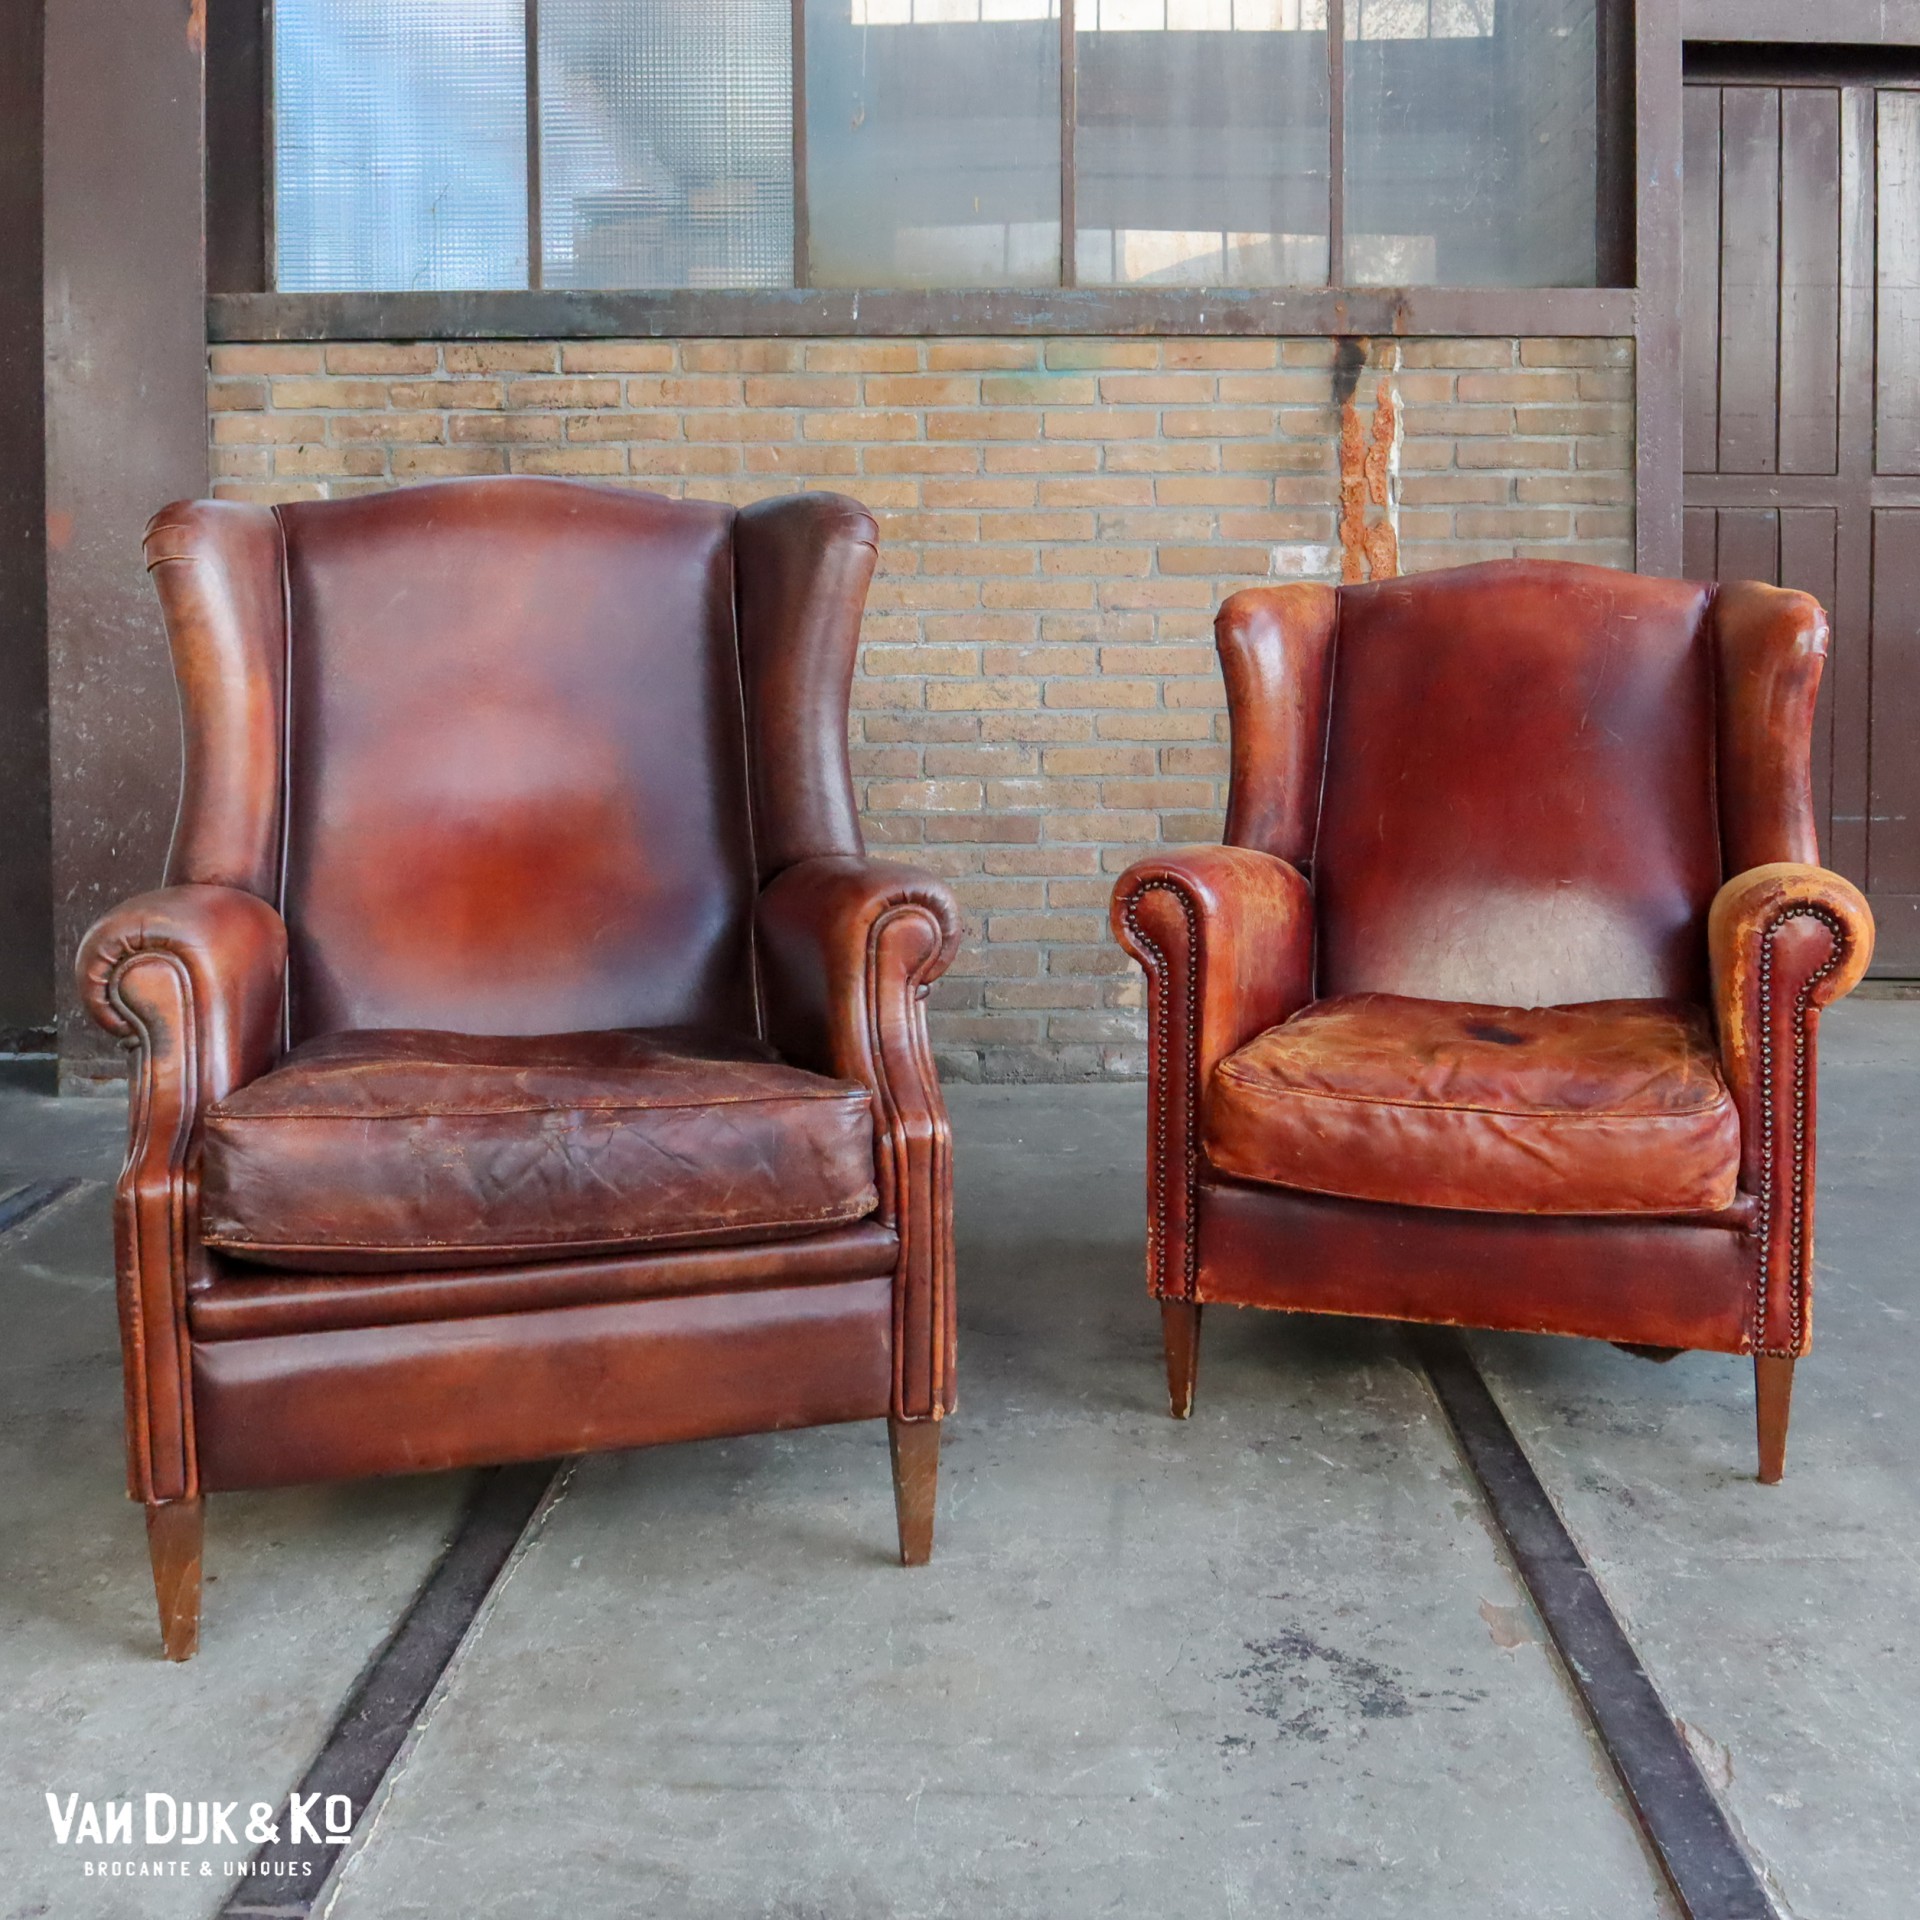 Vintage fauteuil » Van Dijk & Ko